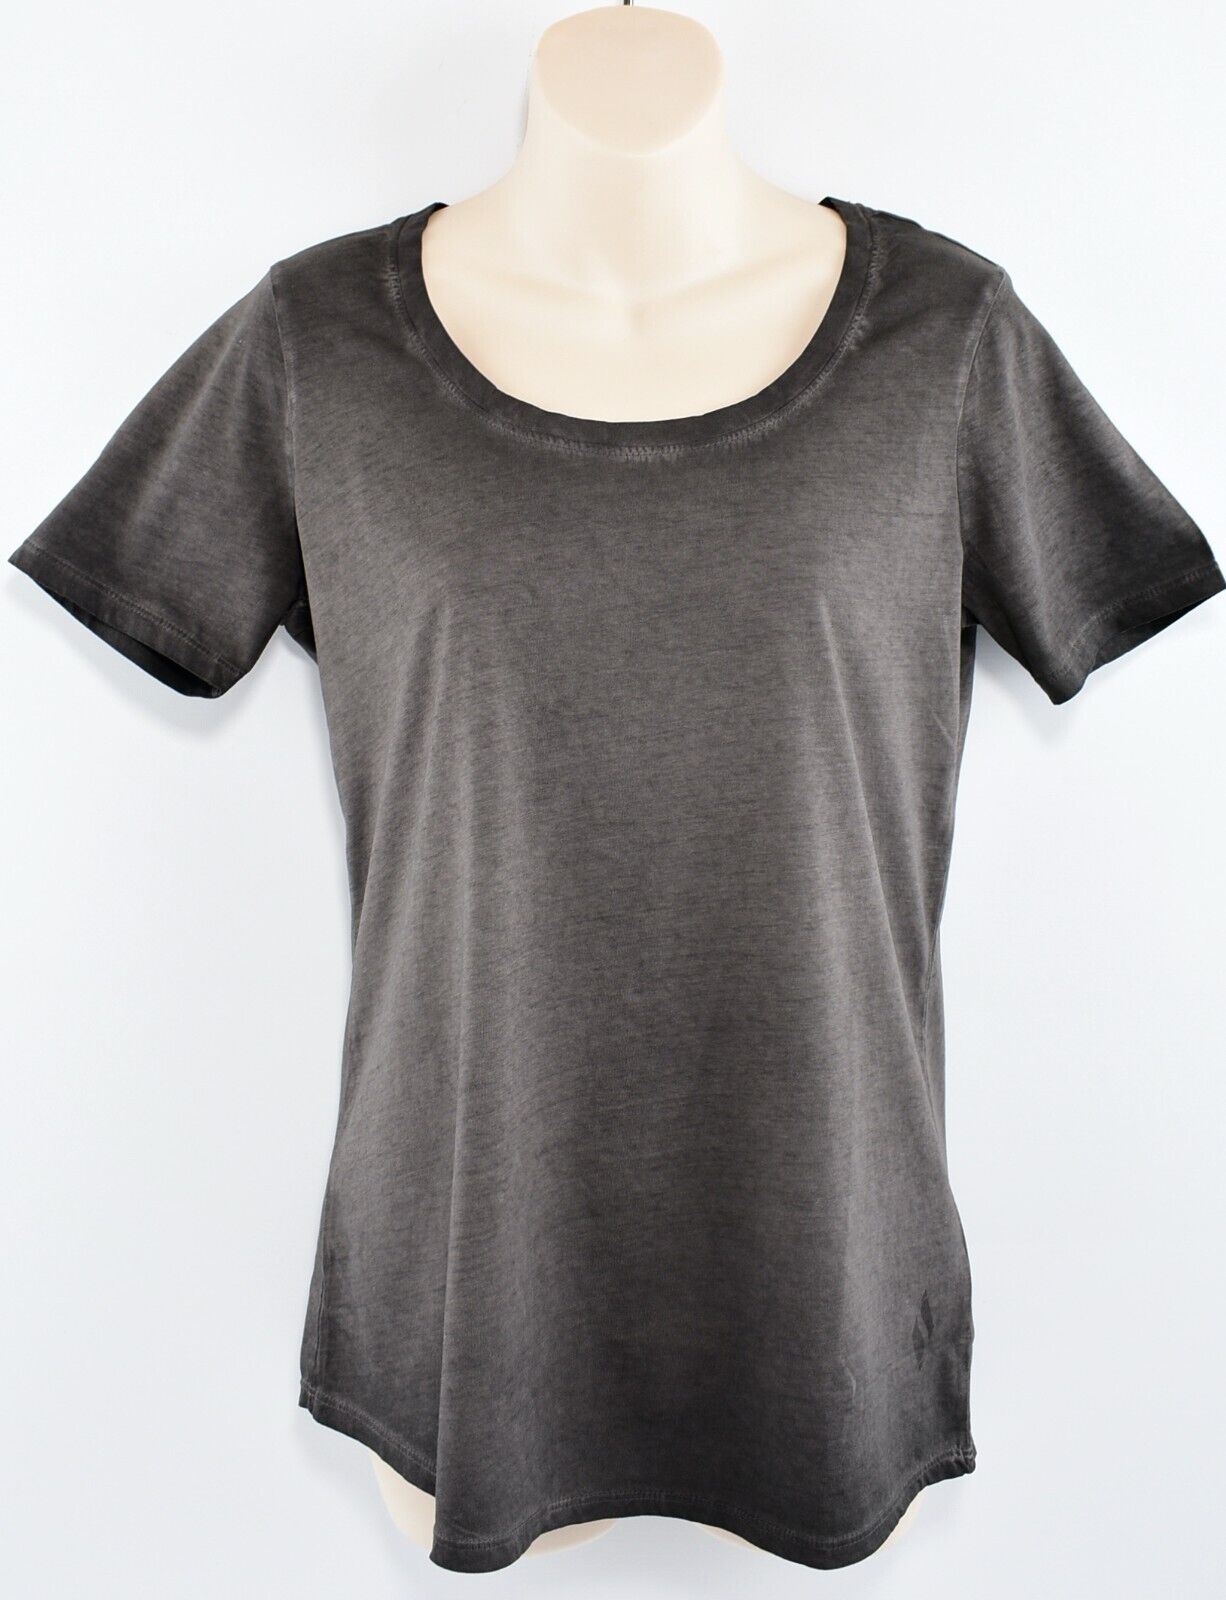 SKECHERS Women's Tunic Tee, T-shirt, Washed Black, size XL